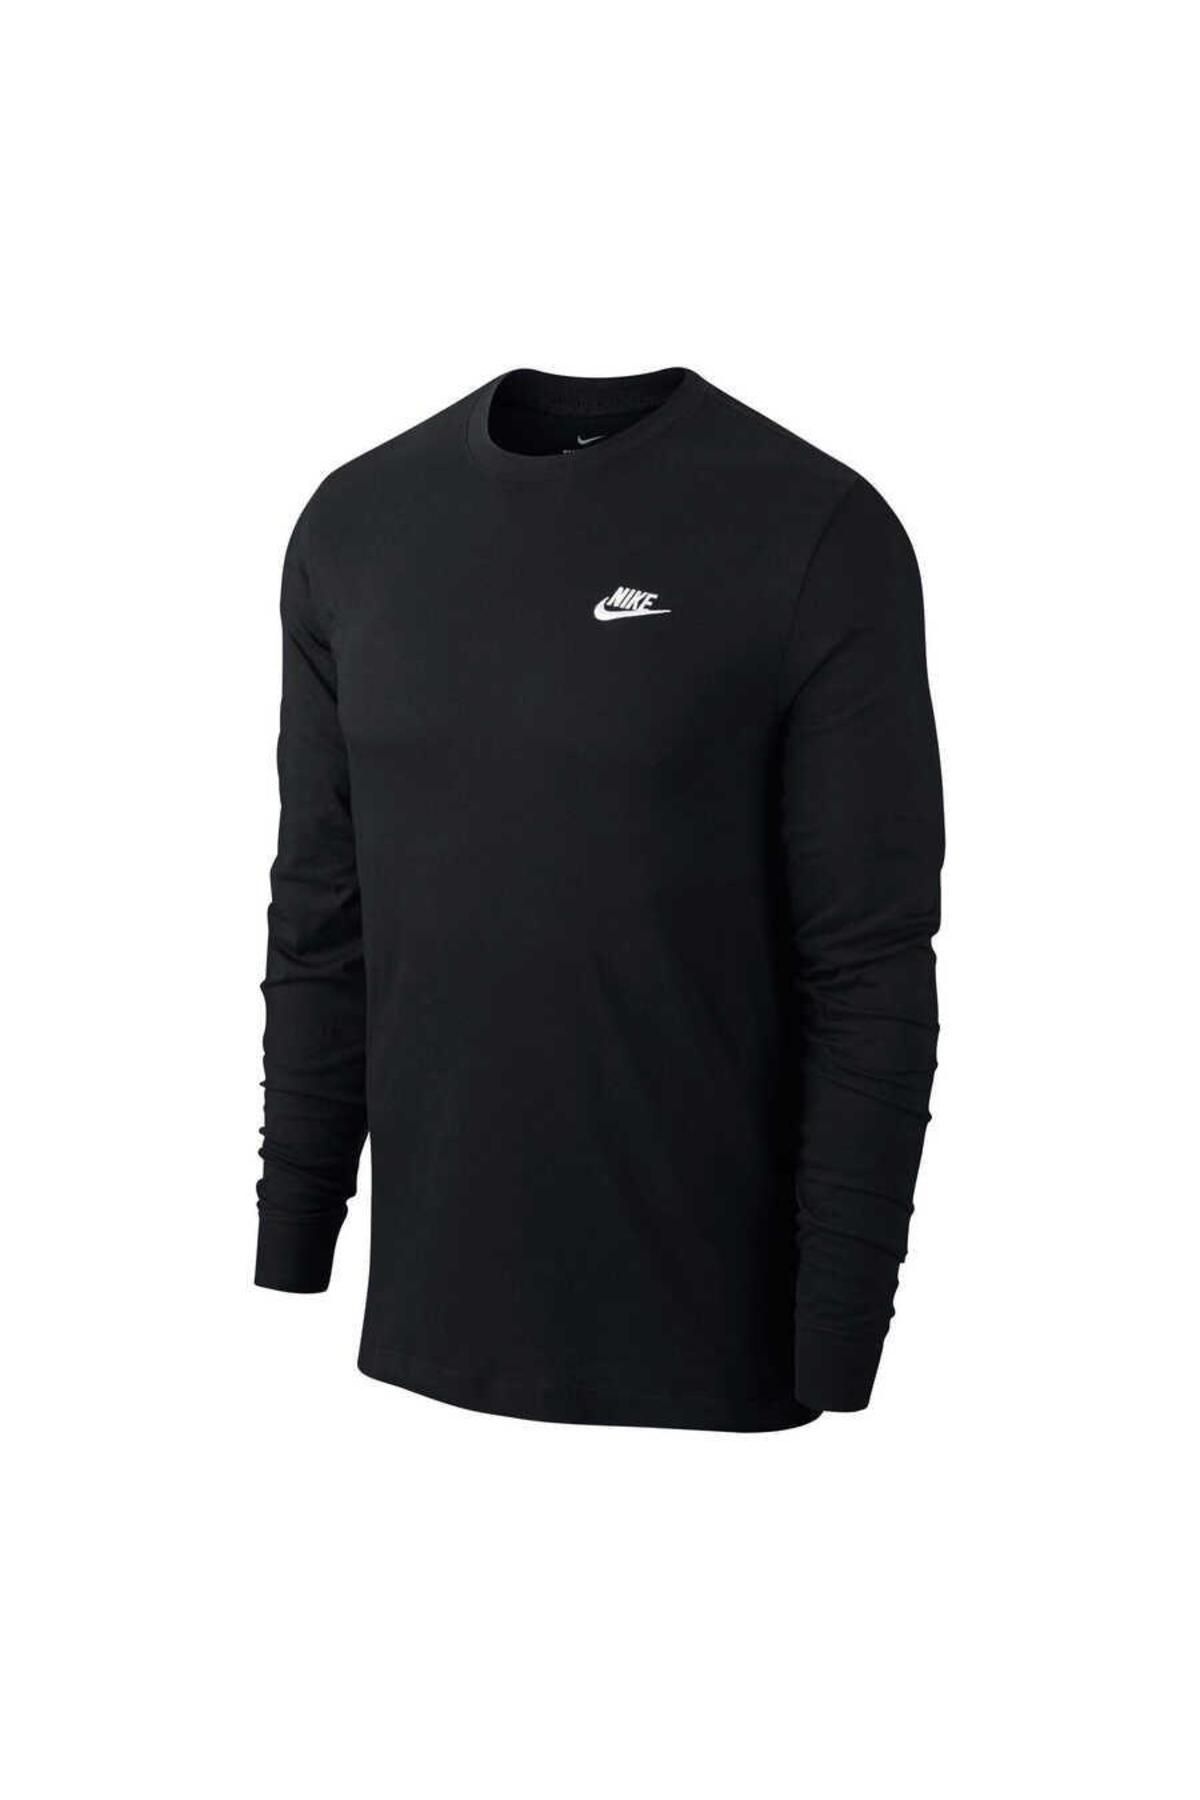 Nike Sportswear Erkek Sweatshirt